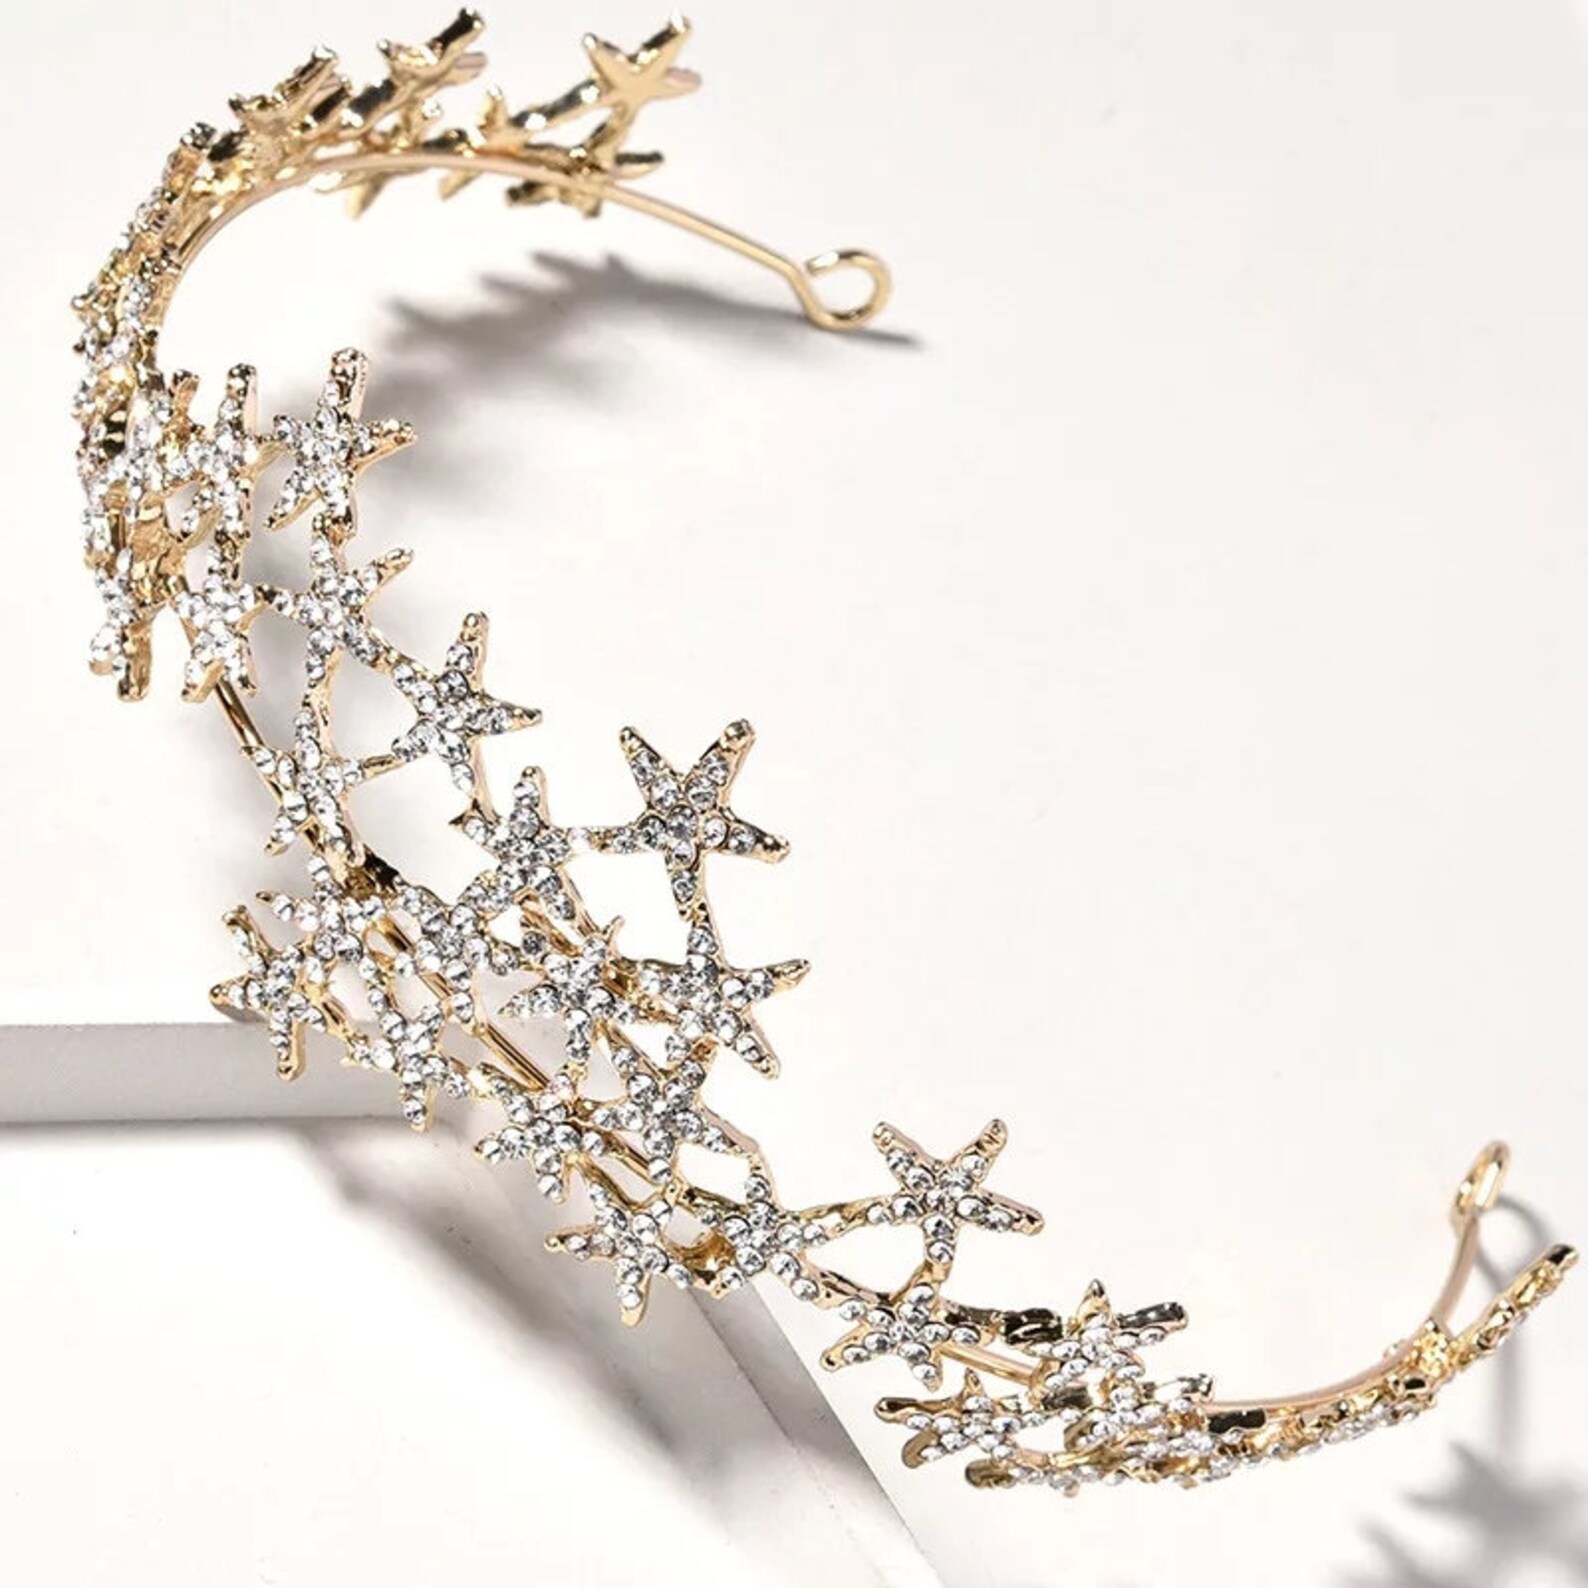 Gold Star Stunning Tiara Crownswarovski Crystalbridal Crown | Etsy